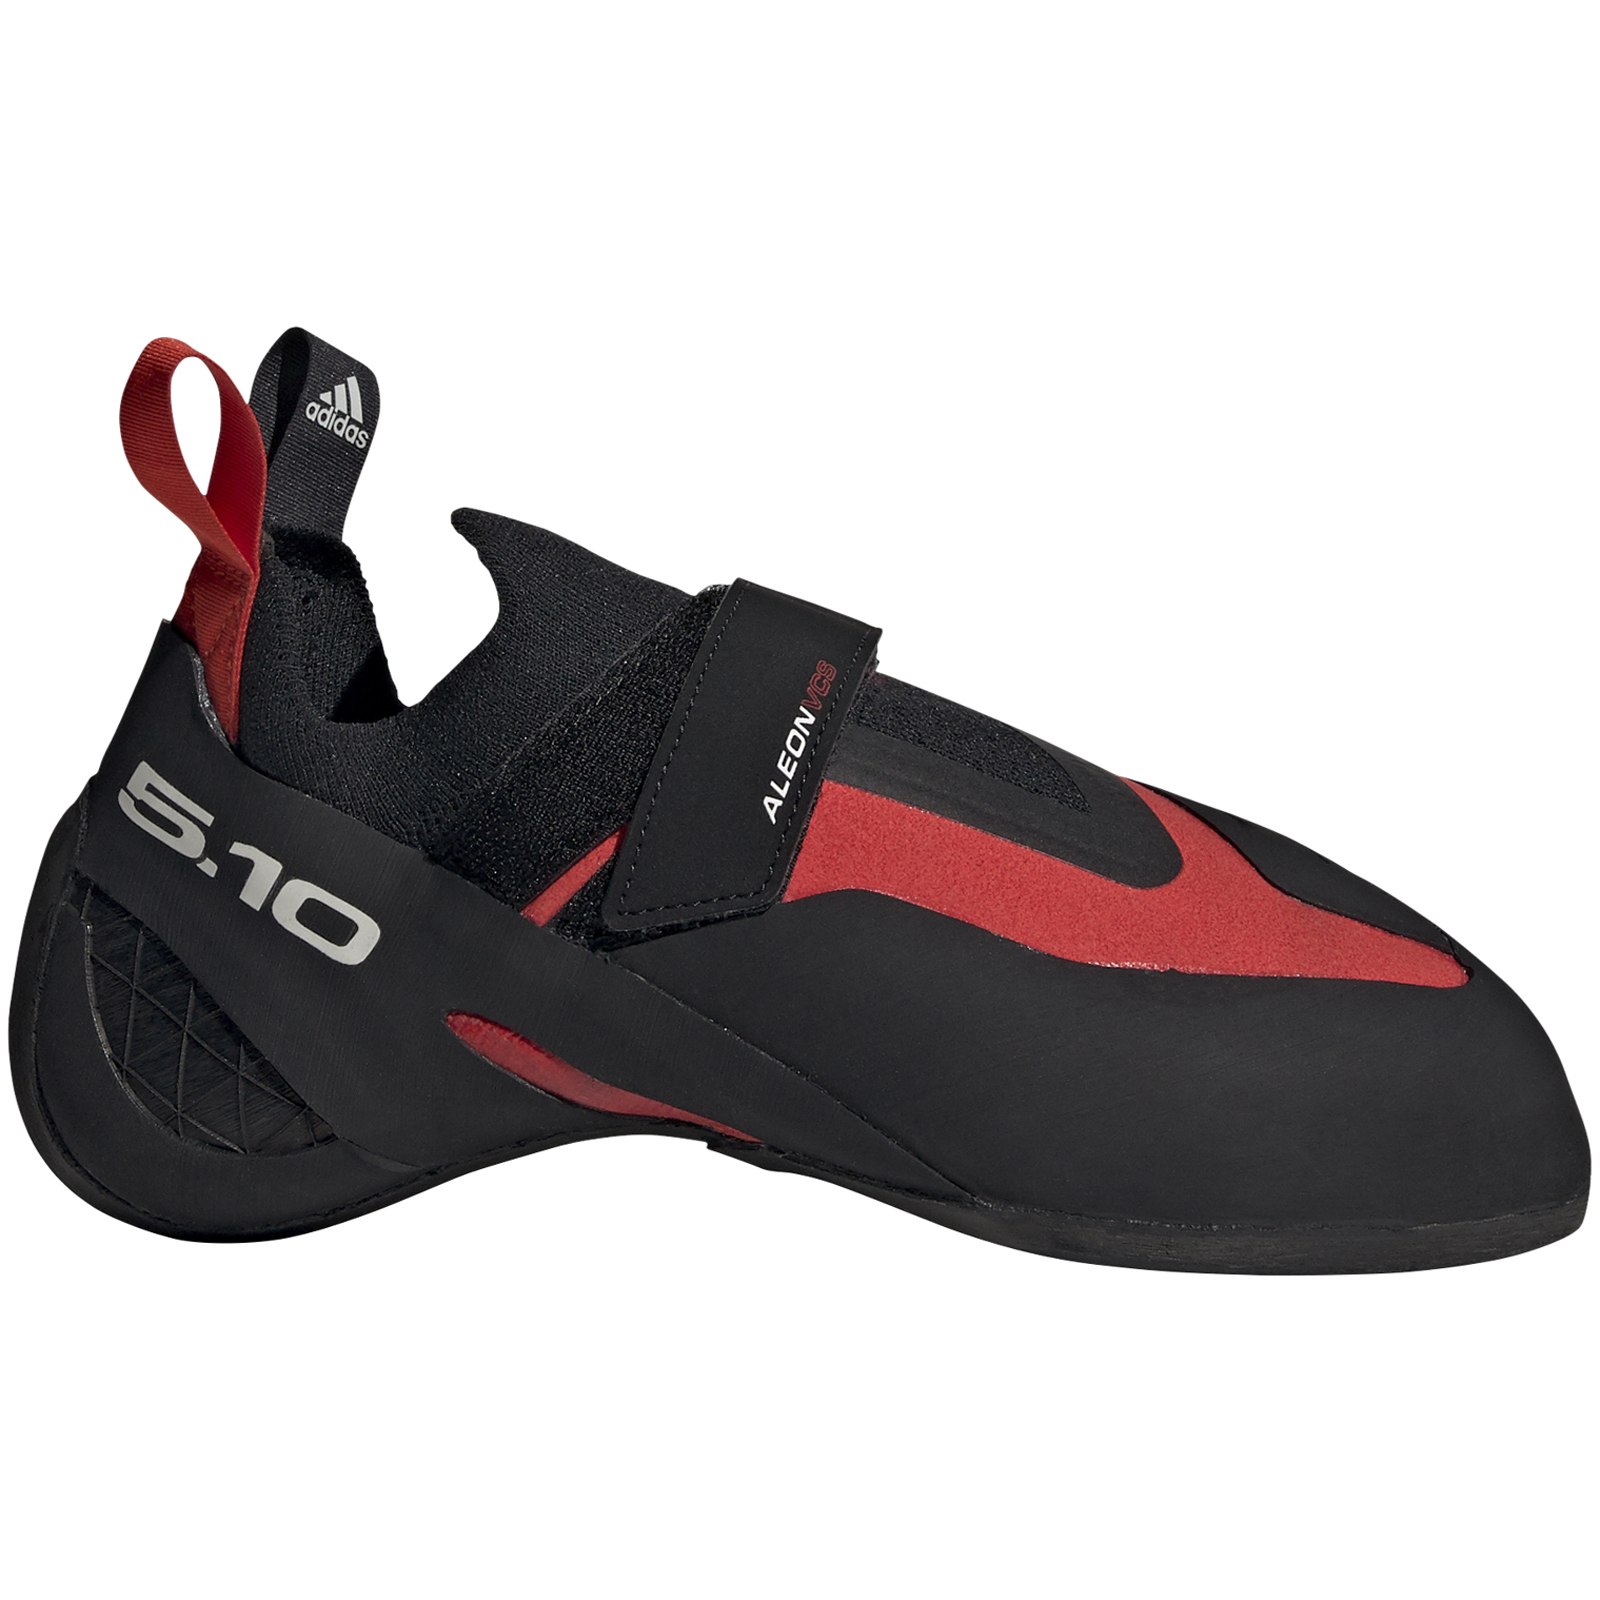 Productfoto van Five Ten Aleon Climbing Shoe - Core Black / Active Red / Grey One